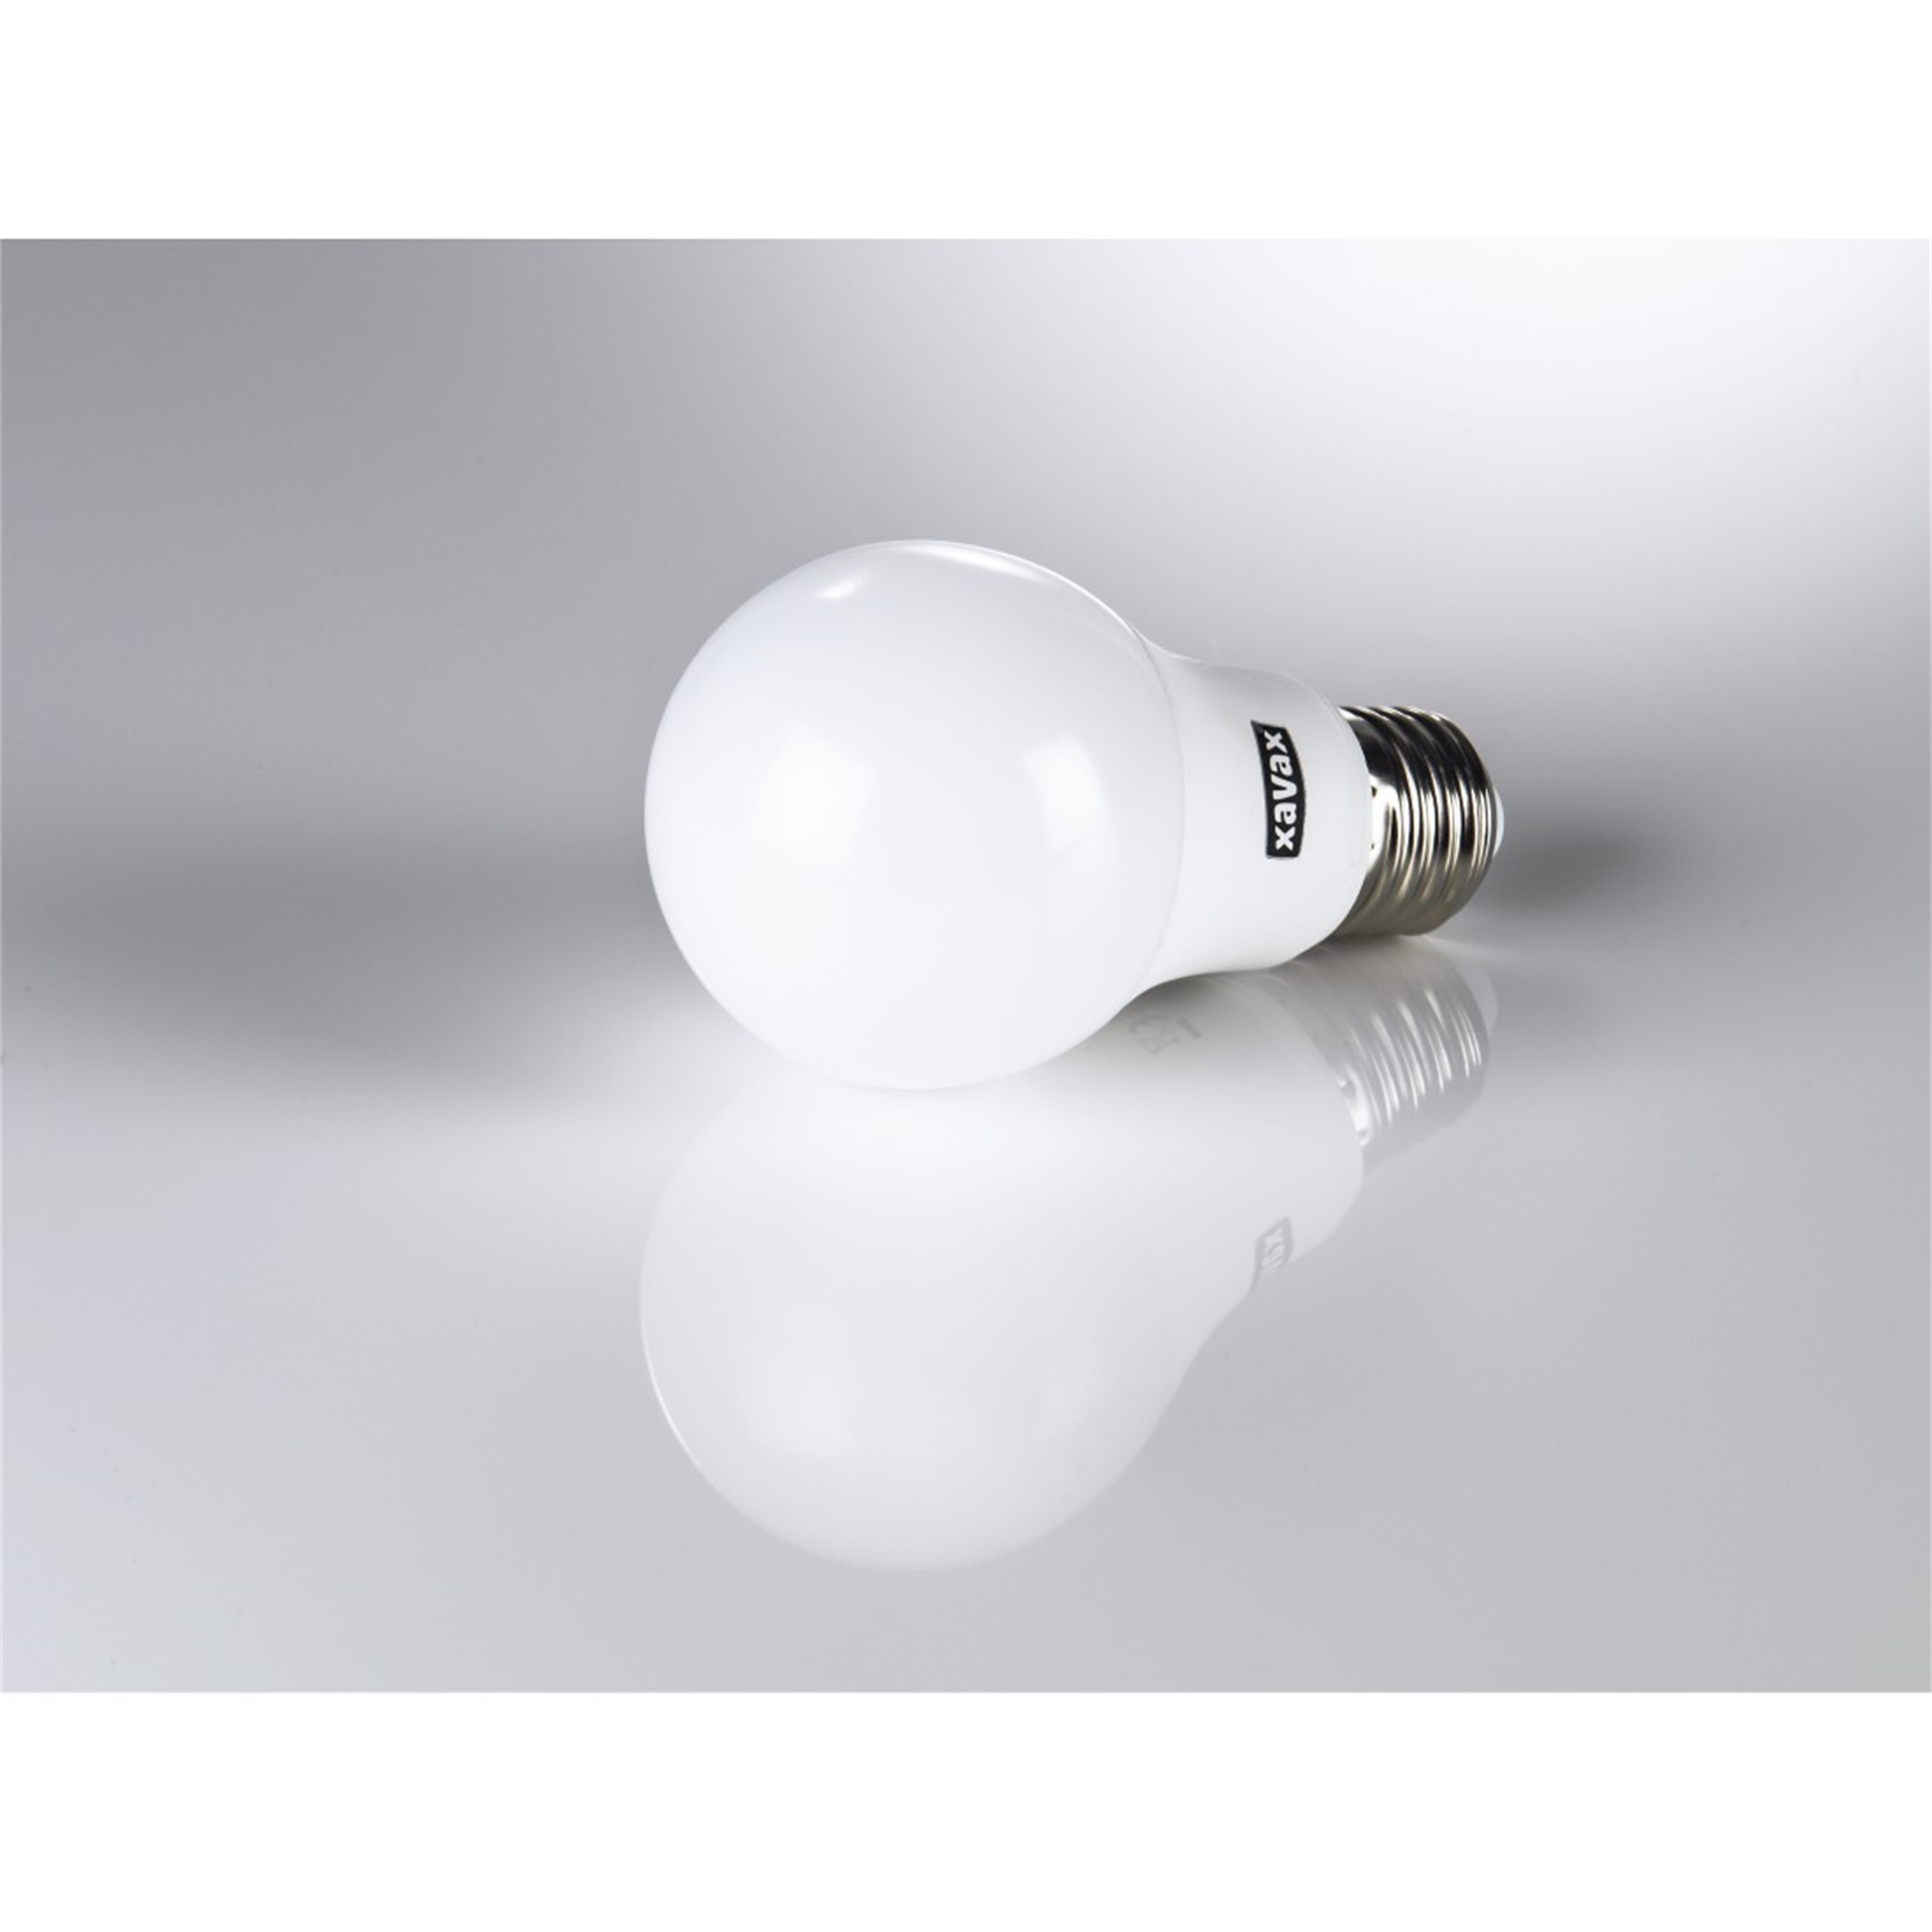 Warmweiß XAVAX 75W ersetzt E27, LED-Lampe E27 1055lm